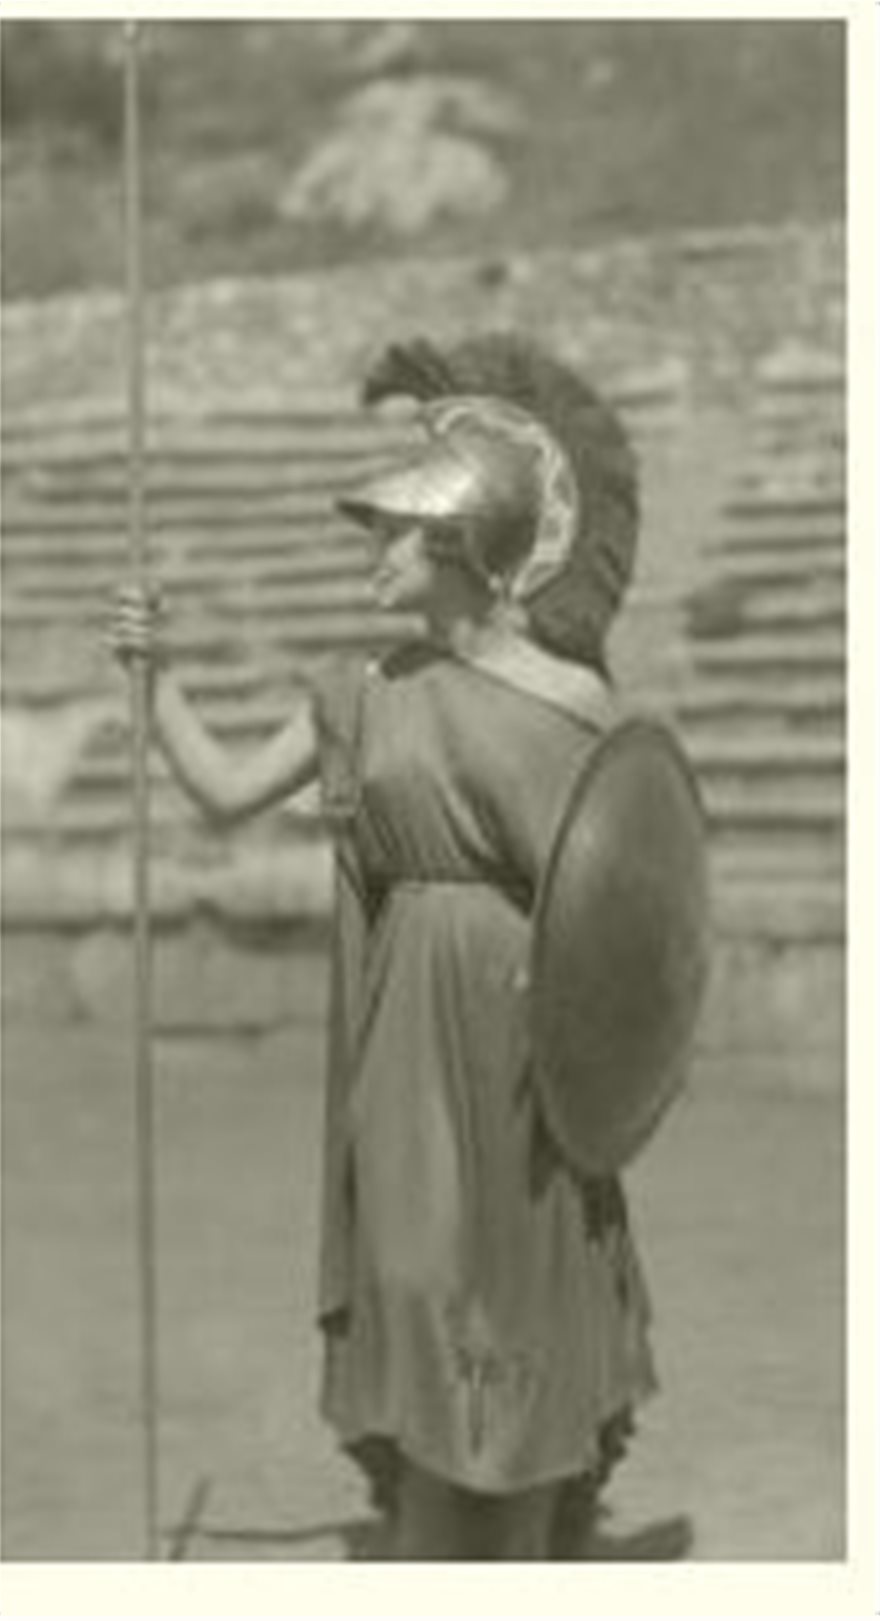 Αλίκη Διπλαράκου: Η Μανιάτισσα καλλονή που πάτησε το άβατο του Αγίου Όρους, έγινε σαν σήμερα η πρώτη Ελληνίδα Μις Ευρώπη - Φωτογραφία 8